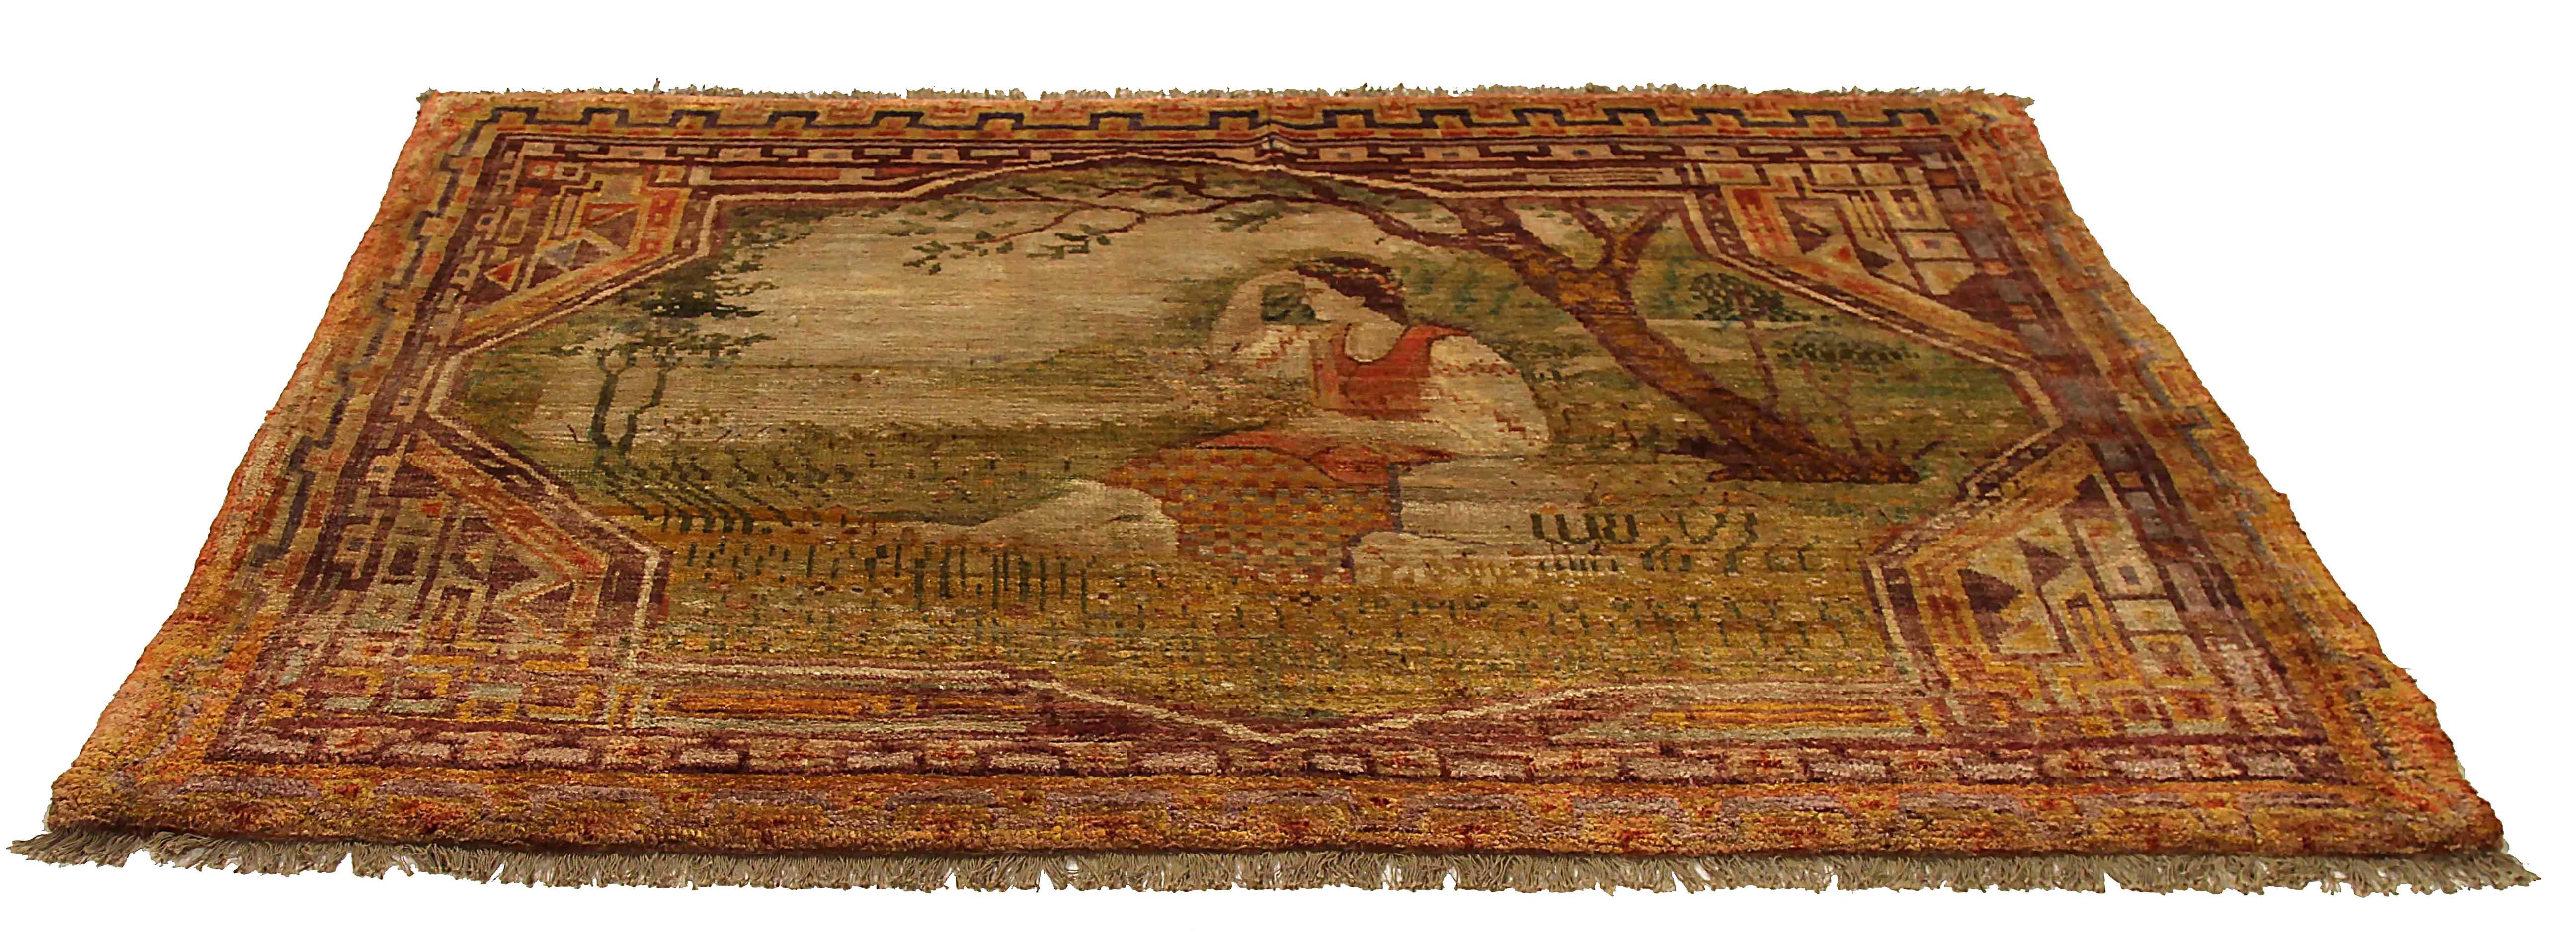 Ancien tapis russe tissé à la main à partir de la meilleure laine de mouton. Il est coloré avec des colorants végétaux entièrement naturels, sans danger pour les humains et les animaux de compagnie. Il s'agit d'un motif traditionnel du Khotan, tissé